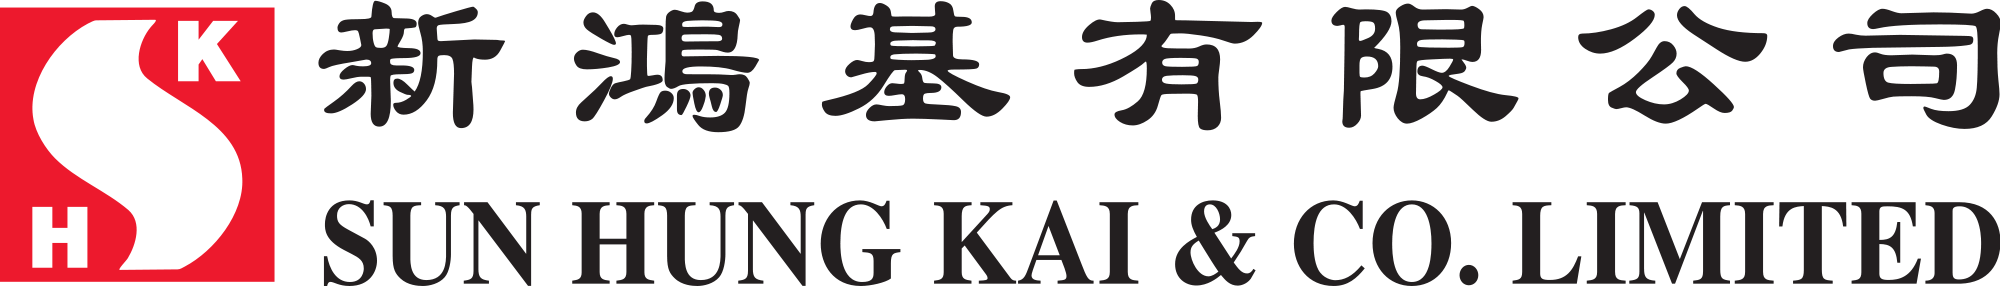 Sun Hung Kai Financial Brand Logo